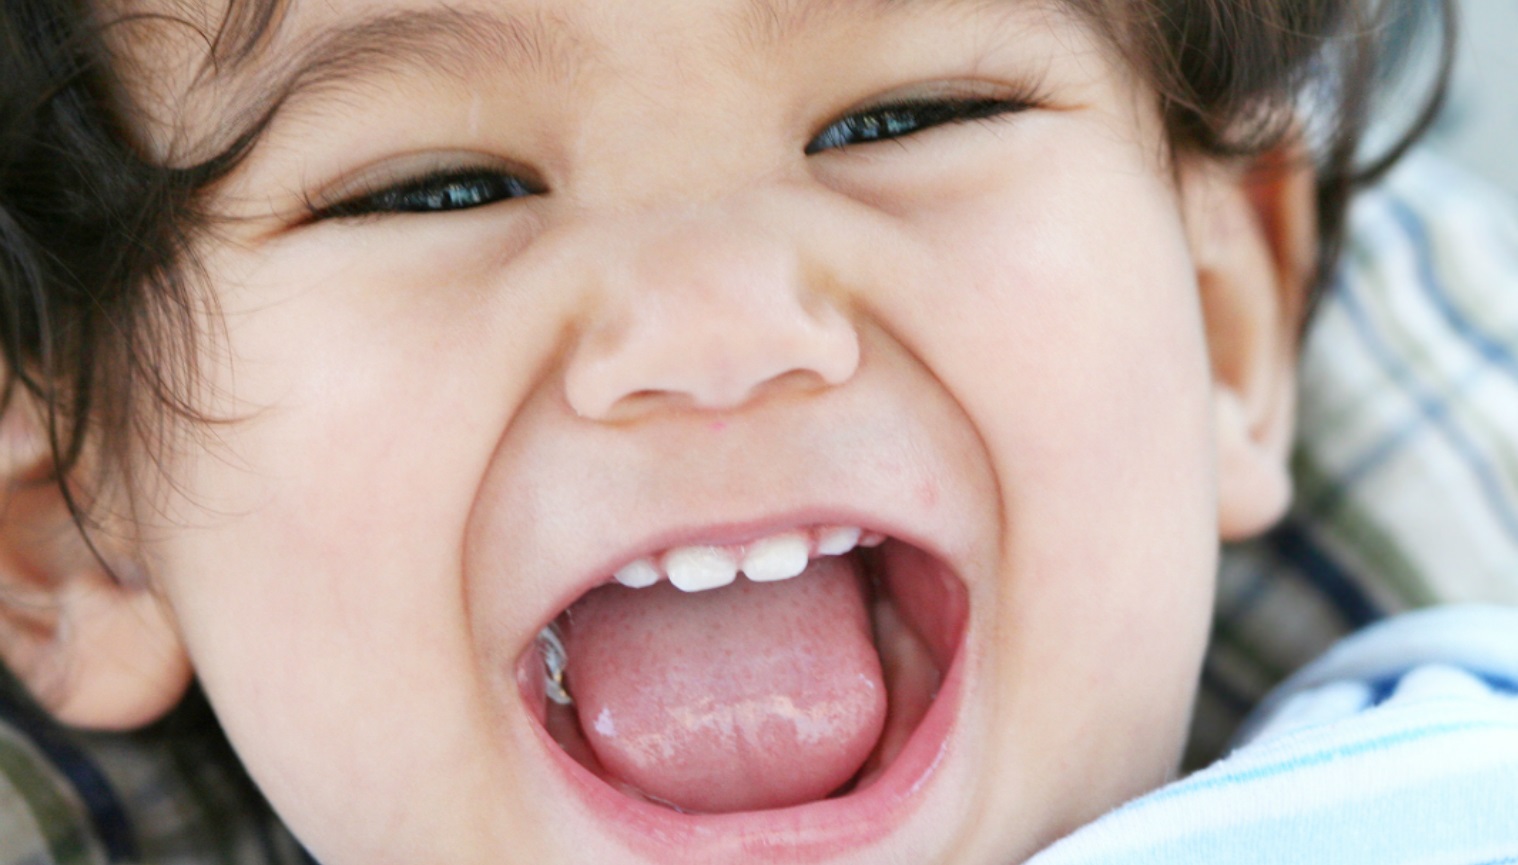 Ini Cara Menyikat Gigi Susu yang Benar pada Bayi, Simak Penjelasannya di Sini